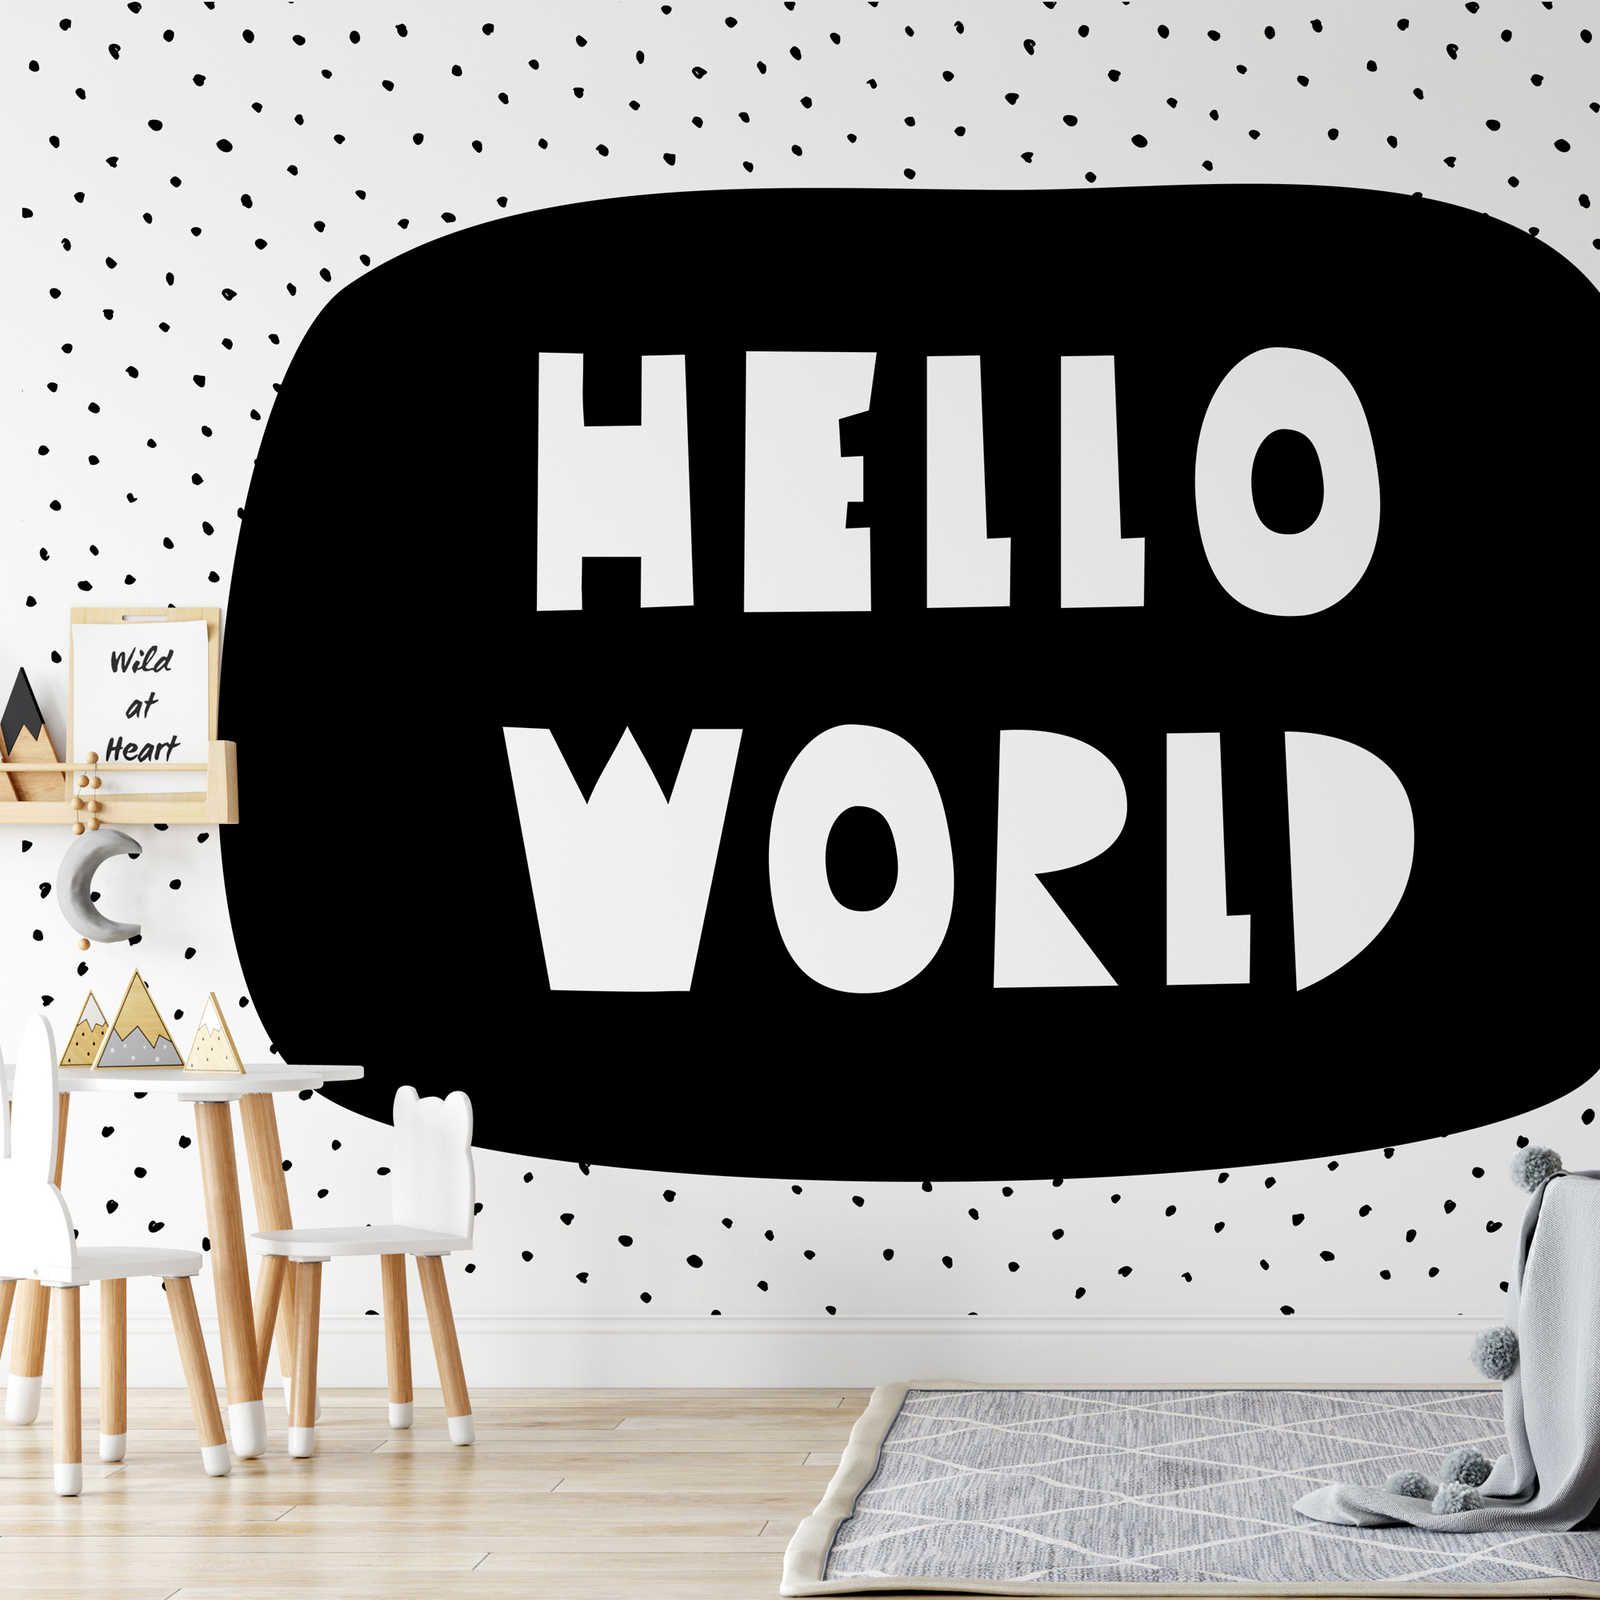 Digital behang voor kinderkamer met opschrift "Hello World" - Glad & mat vlies
